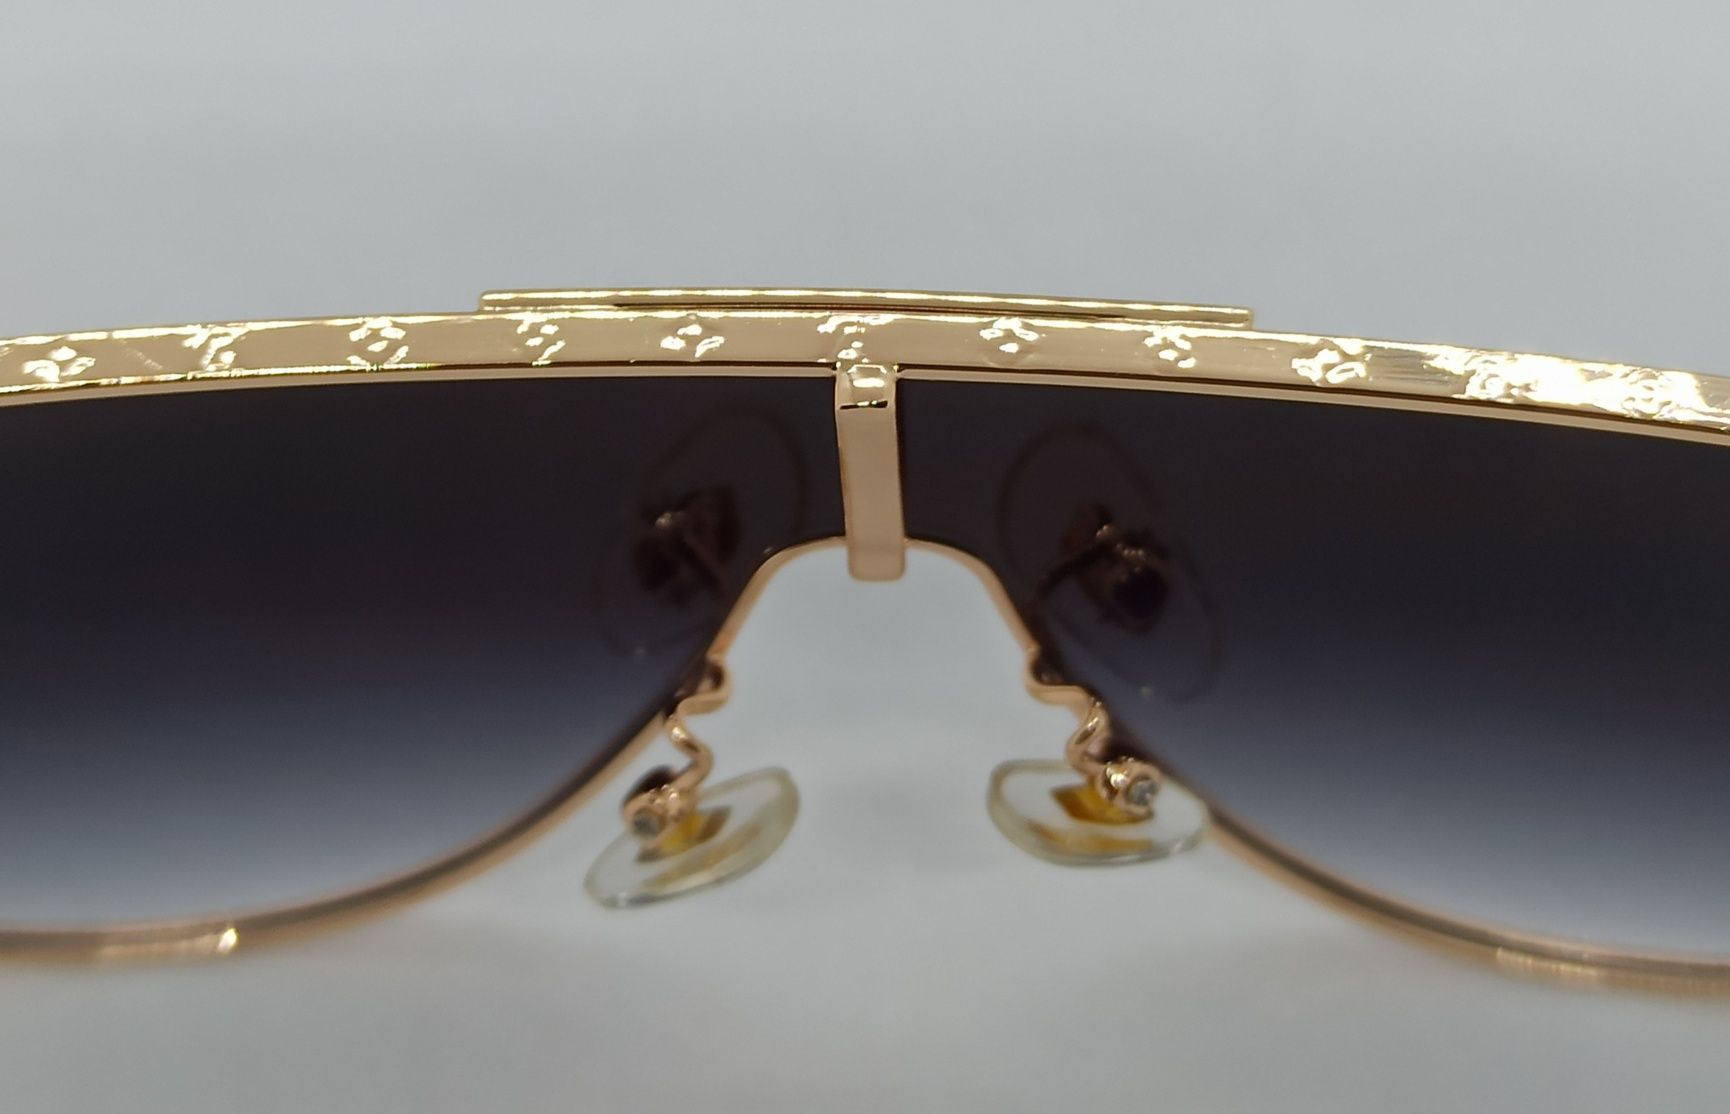 Louis Vuitton очки маска стильные темно серый градиент в золотом метал